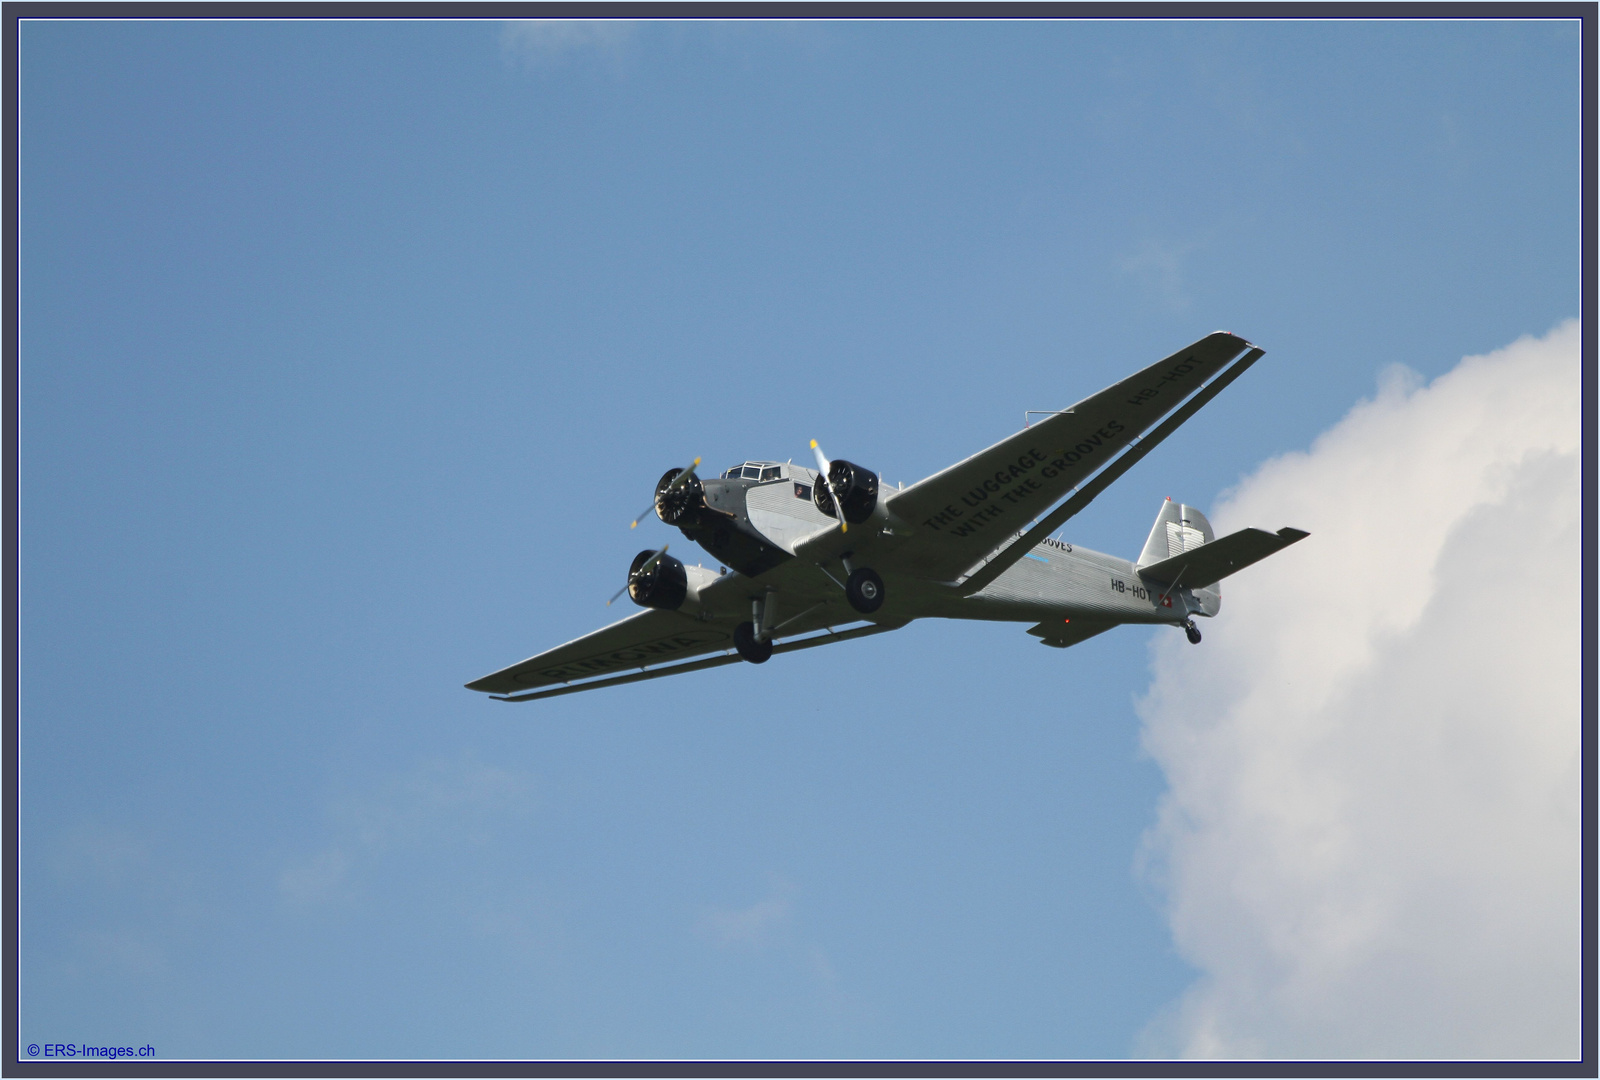 HB-HOT Ju-Air Junkers Ju-52 31.08.13 IMG_7395 (8) ©